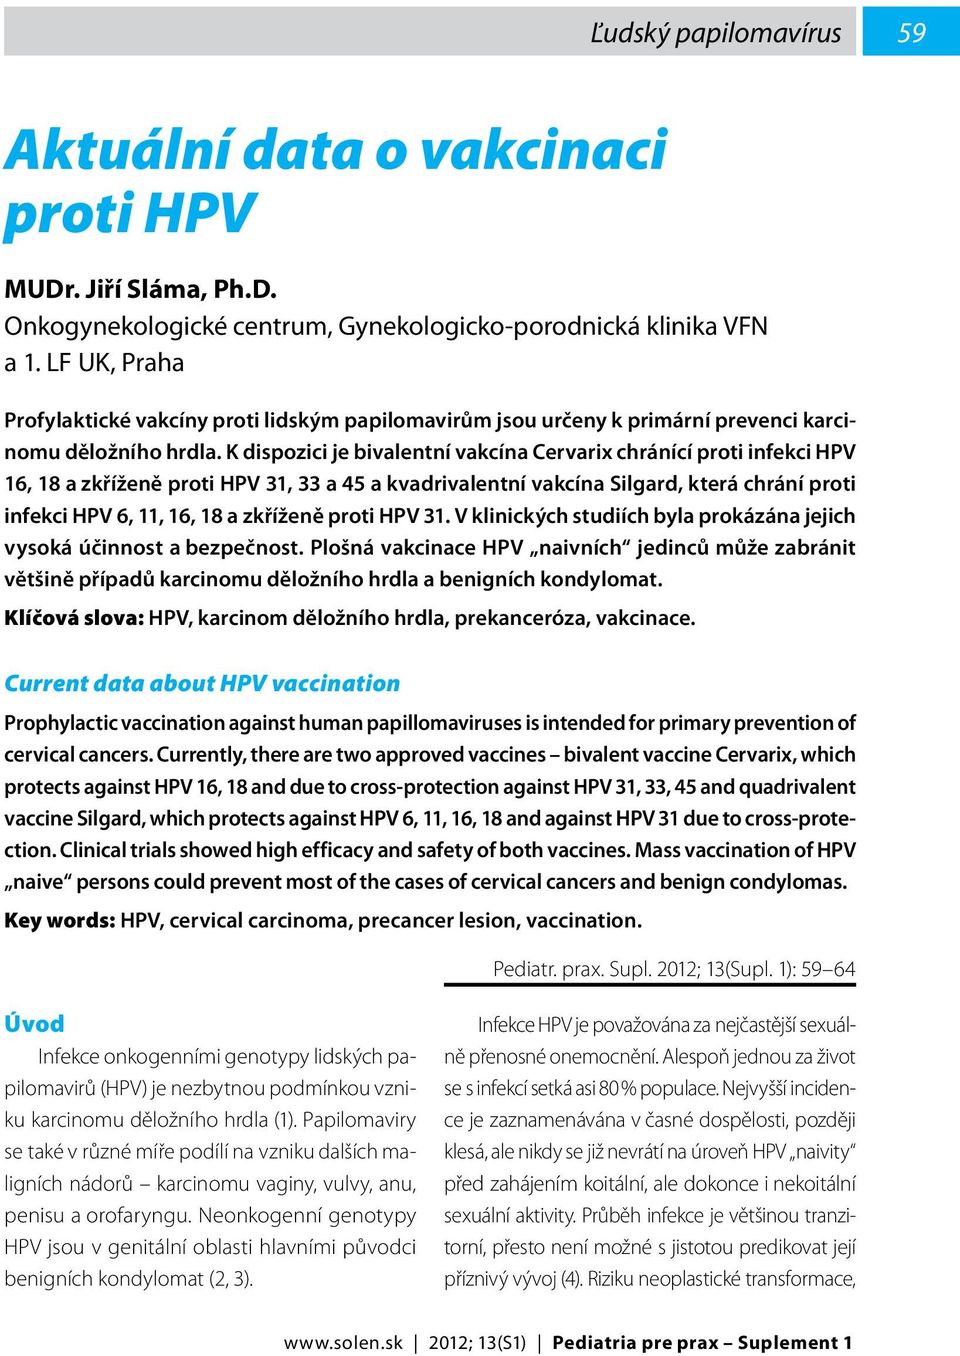 K dispozici je bivalentní vakcína Cervarix chránící proti infekci HPV 16, 18 a zkříženě proti HPV 31, 33 a 45 a kvadrivalentní vakcína Silgard, která chrání proti infekci HPV 6, 11, 16, 18 a zkříženě